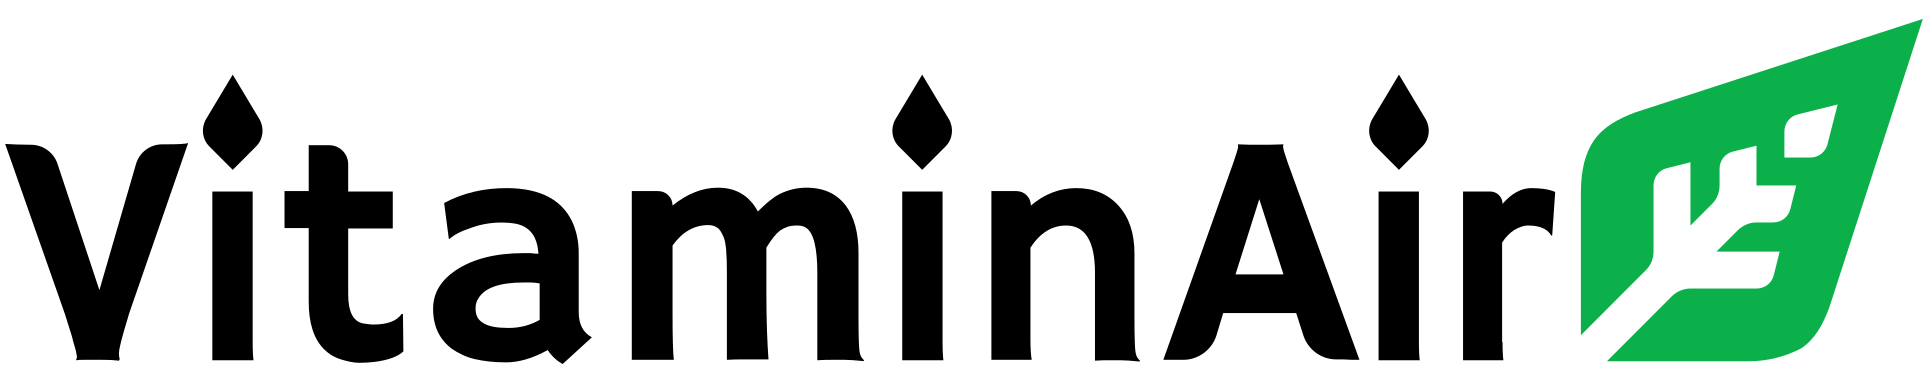 vitaminair logo